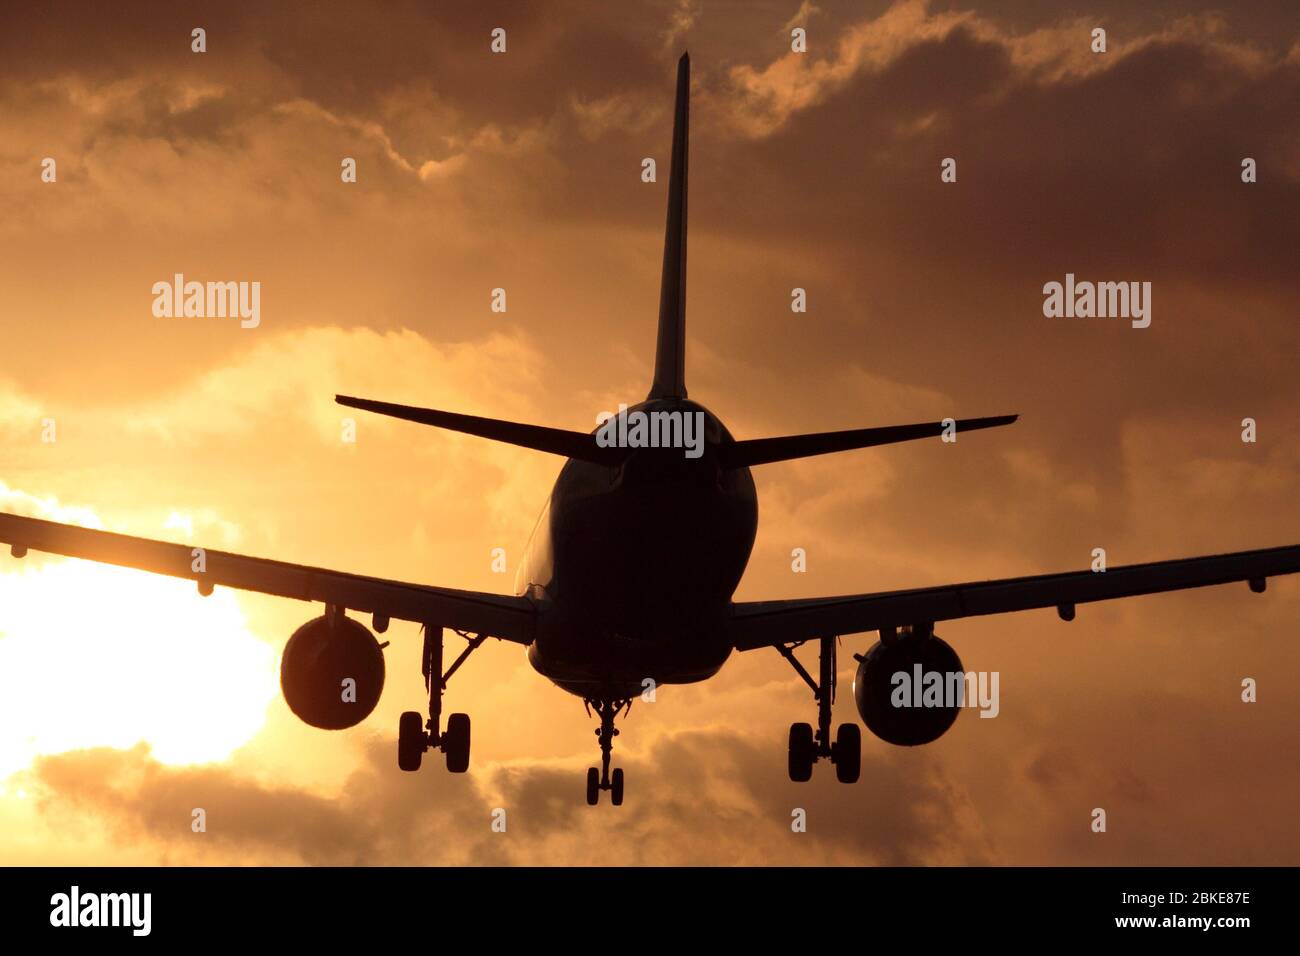 Viajes aéreos. Avión de pasajeros de avión de reacción volando en aproximación para aterrizar contra un cielo nublado al atardecer. Vista desde atrás en silueta. Foto de stock